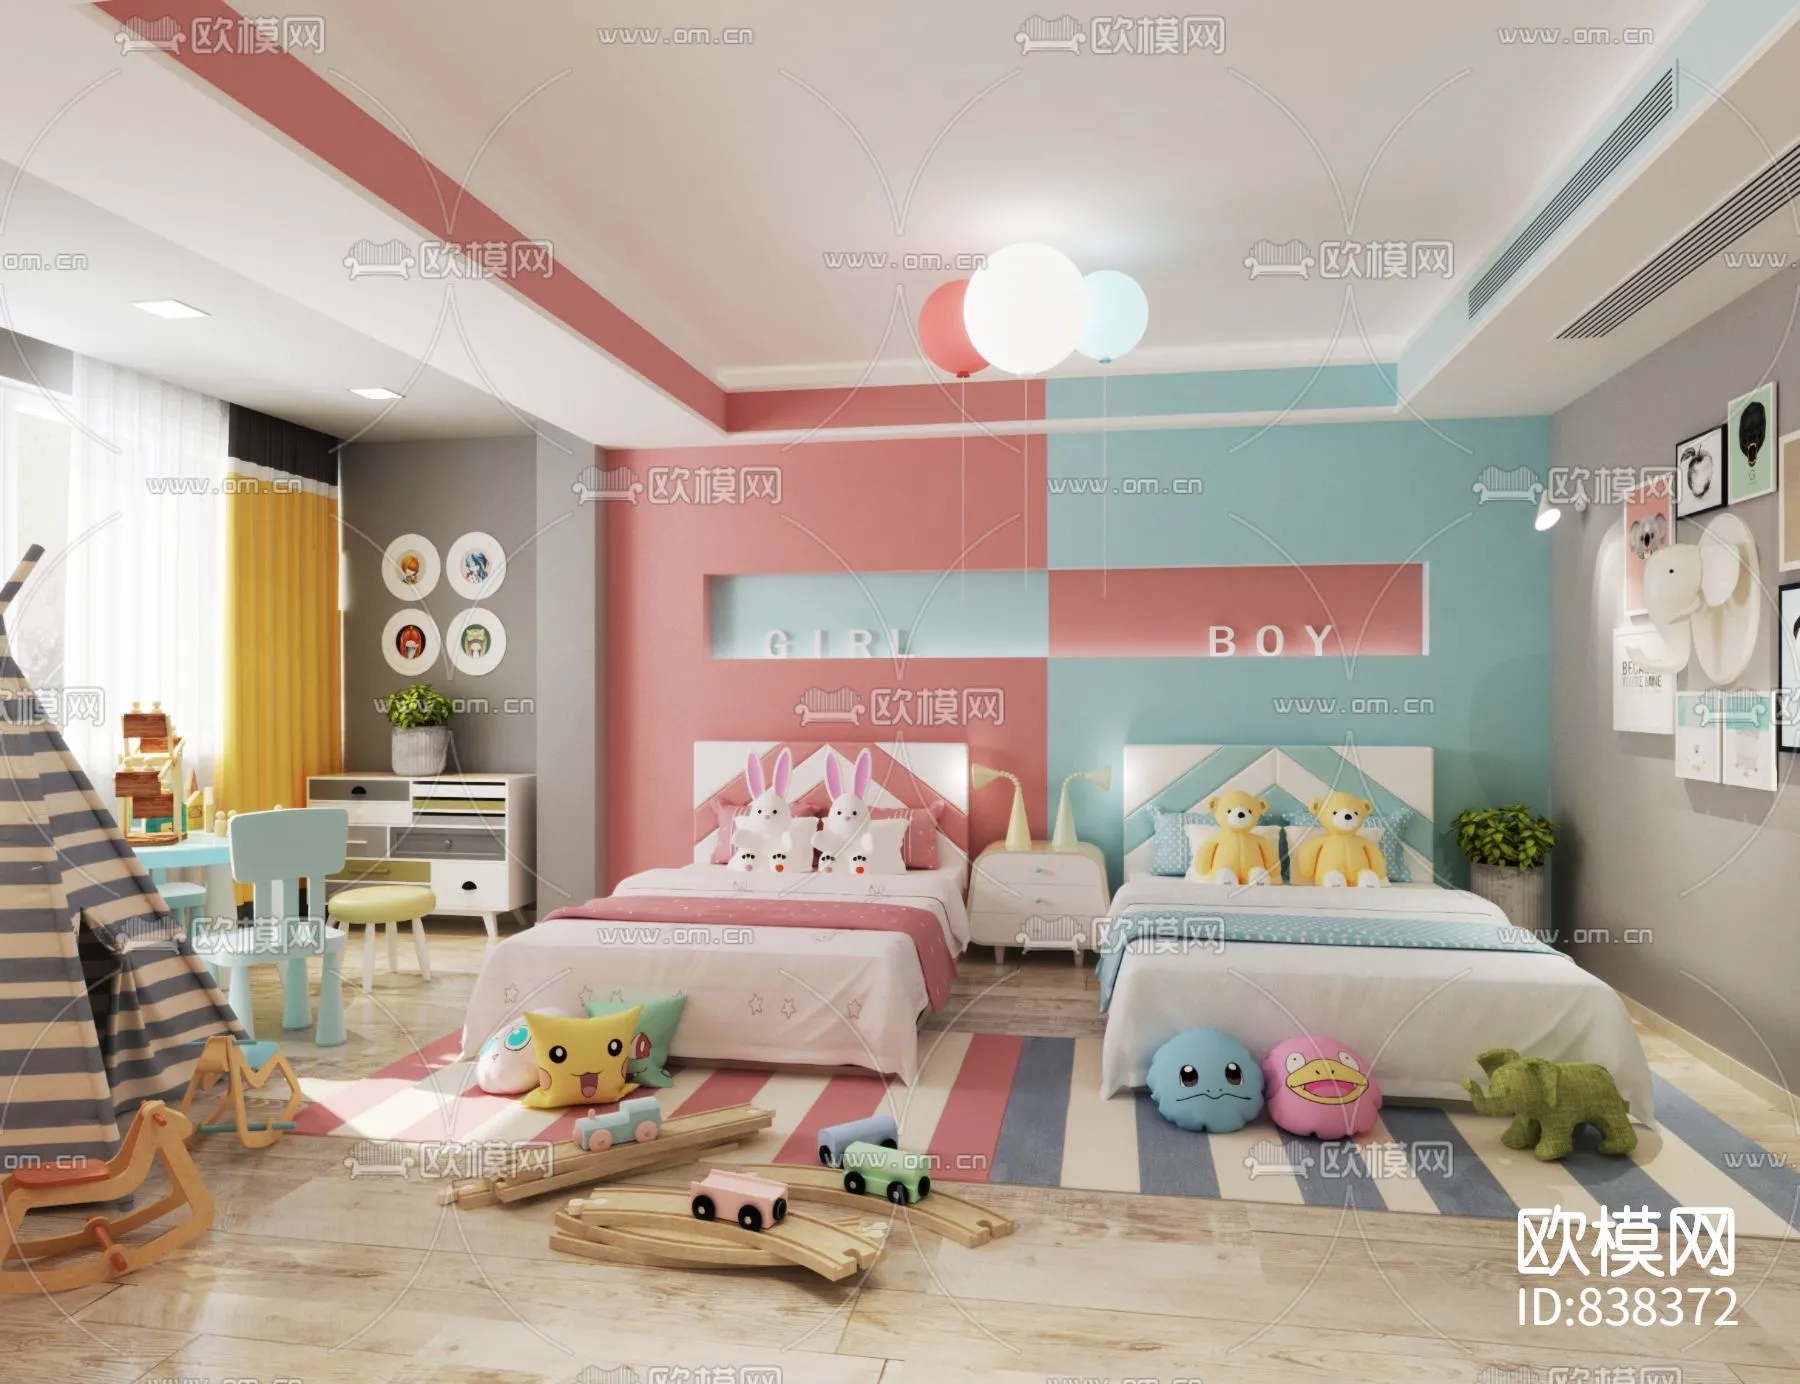 Children Room 3D Scenes – 0342